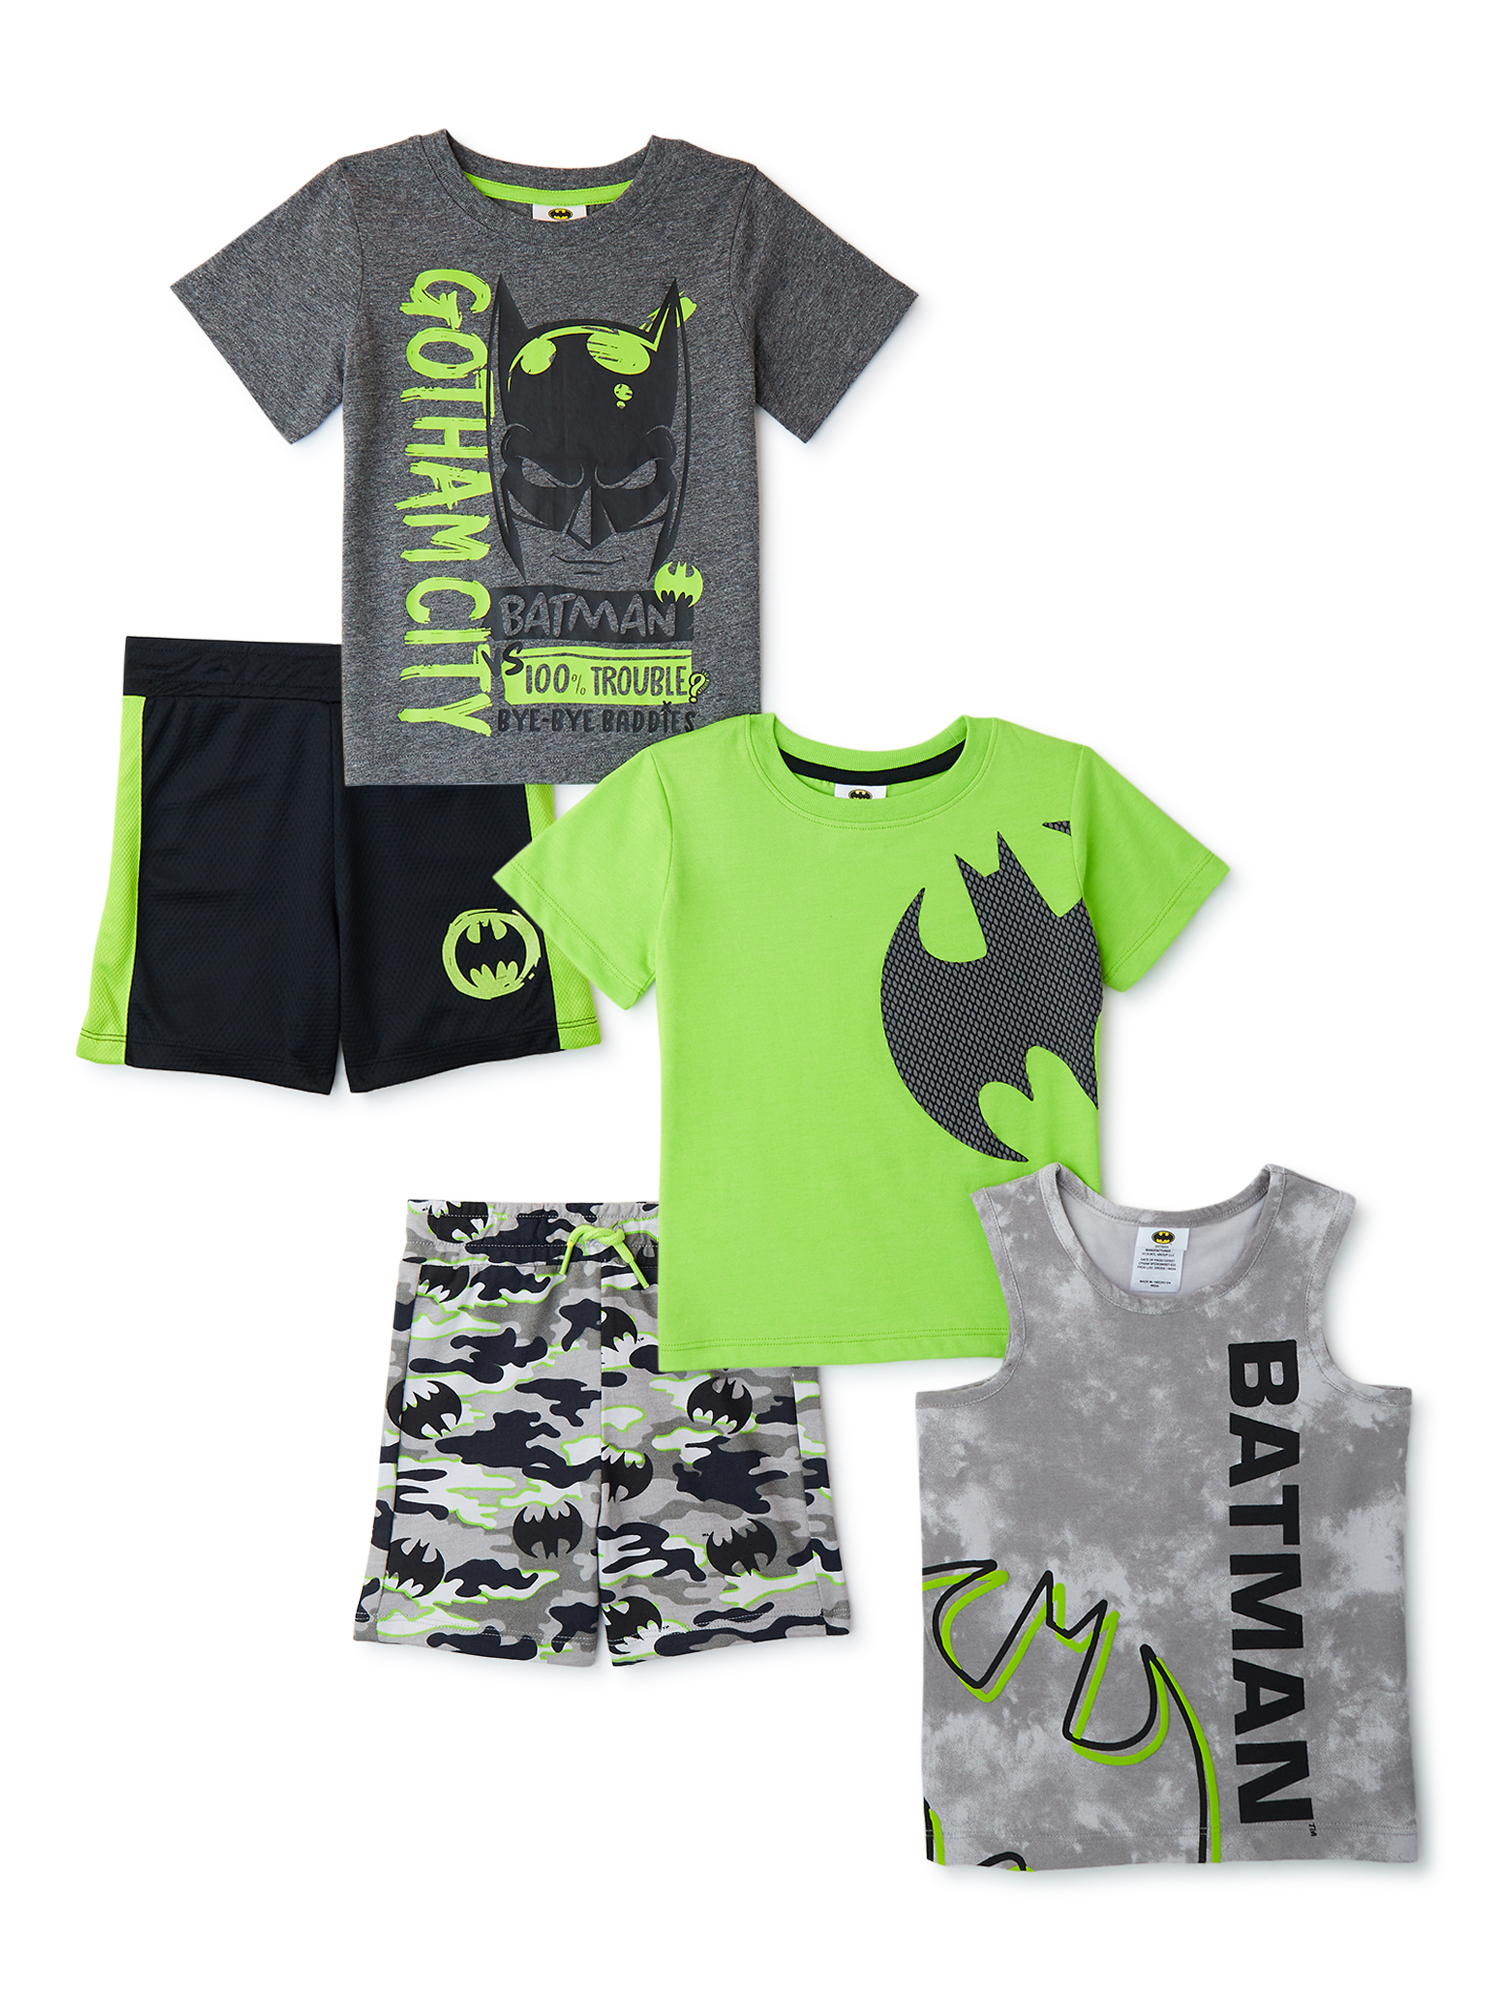 Batman Toddler Boy 5-Piece Outfit Set, Sizes 12M-5T - image 1 of 12